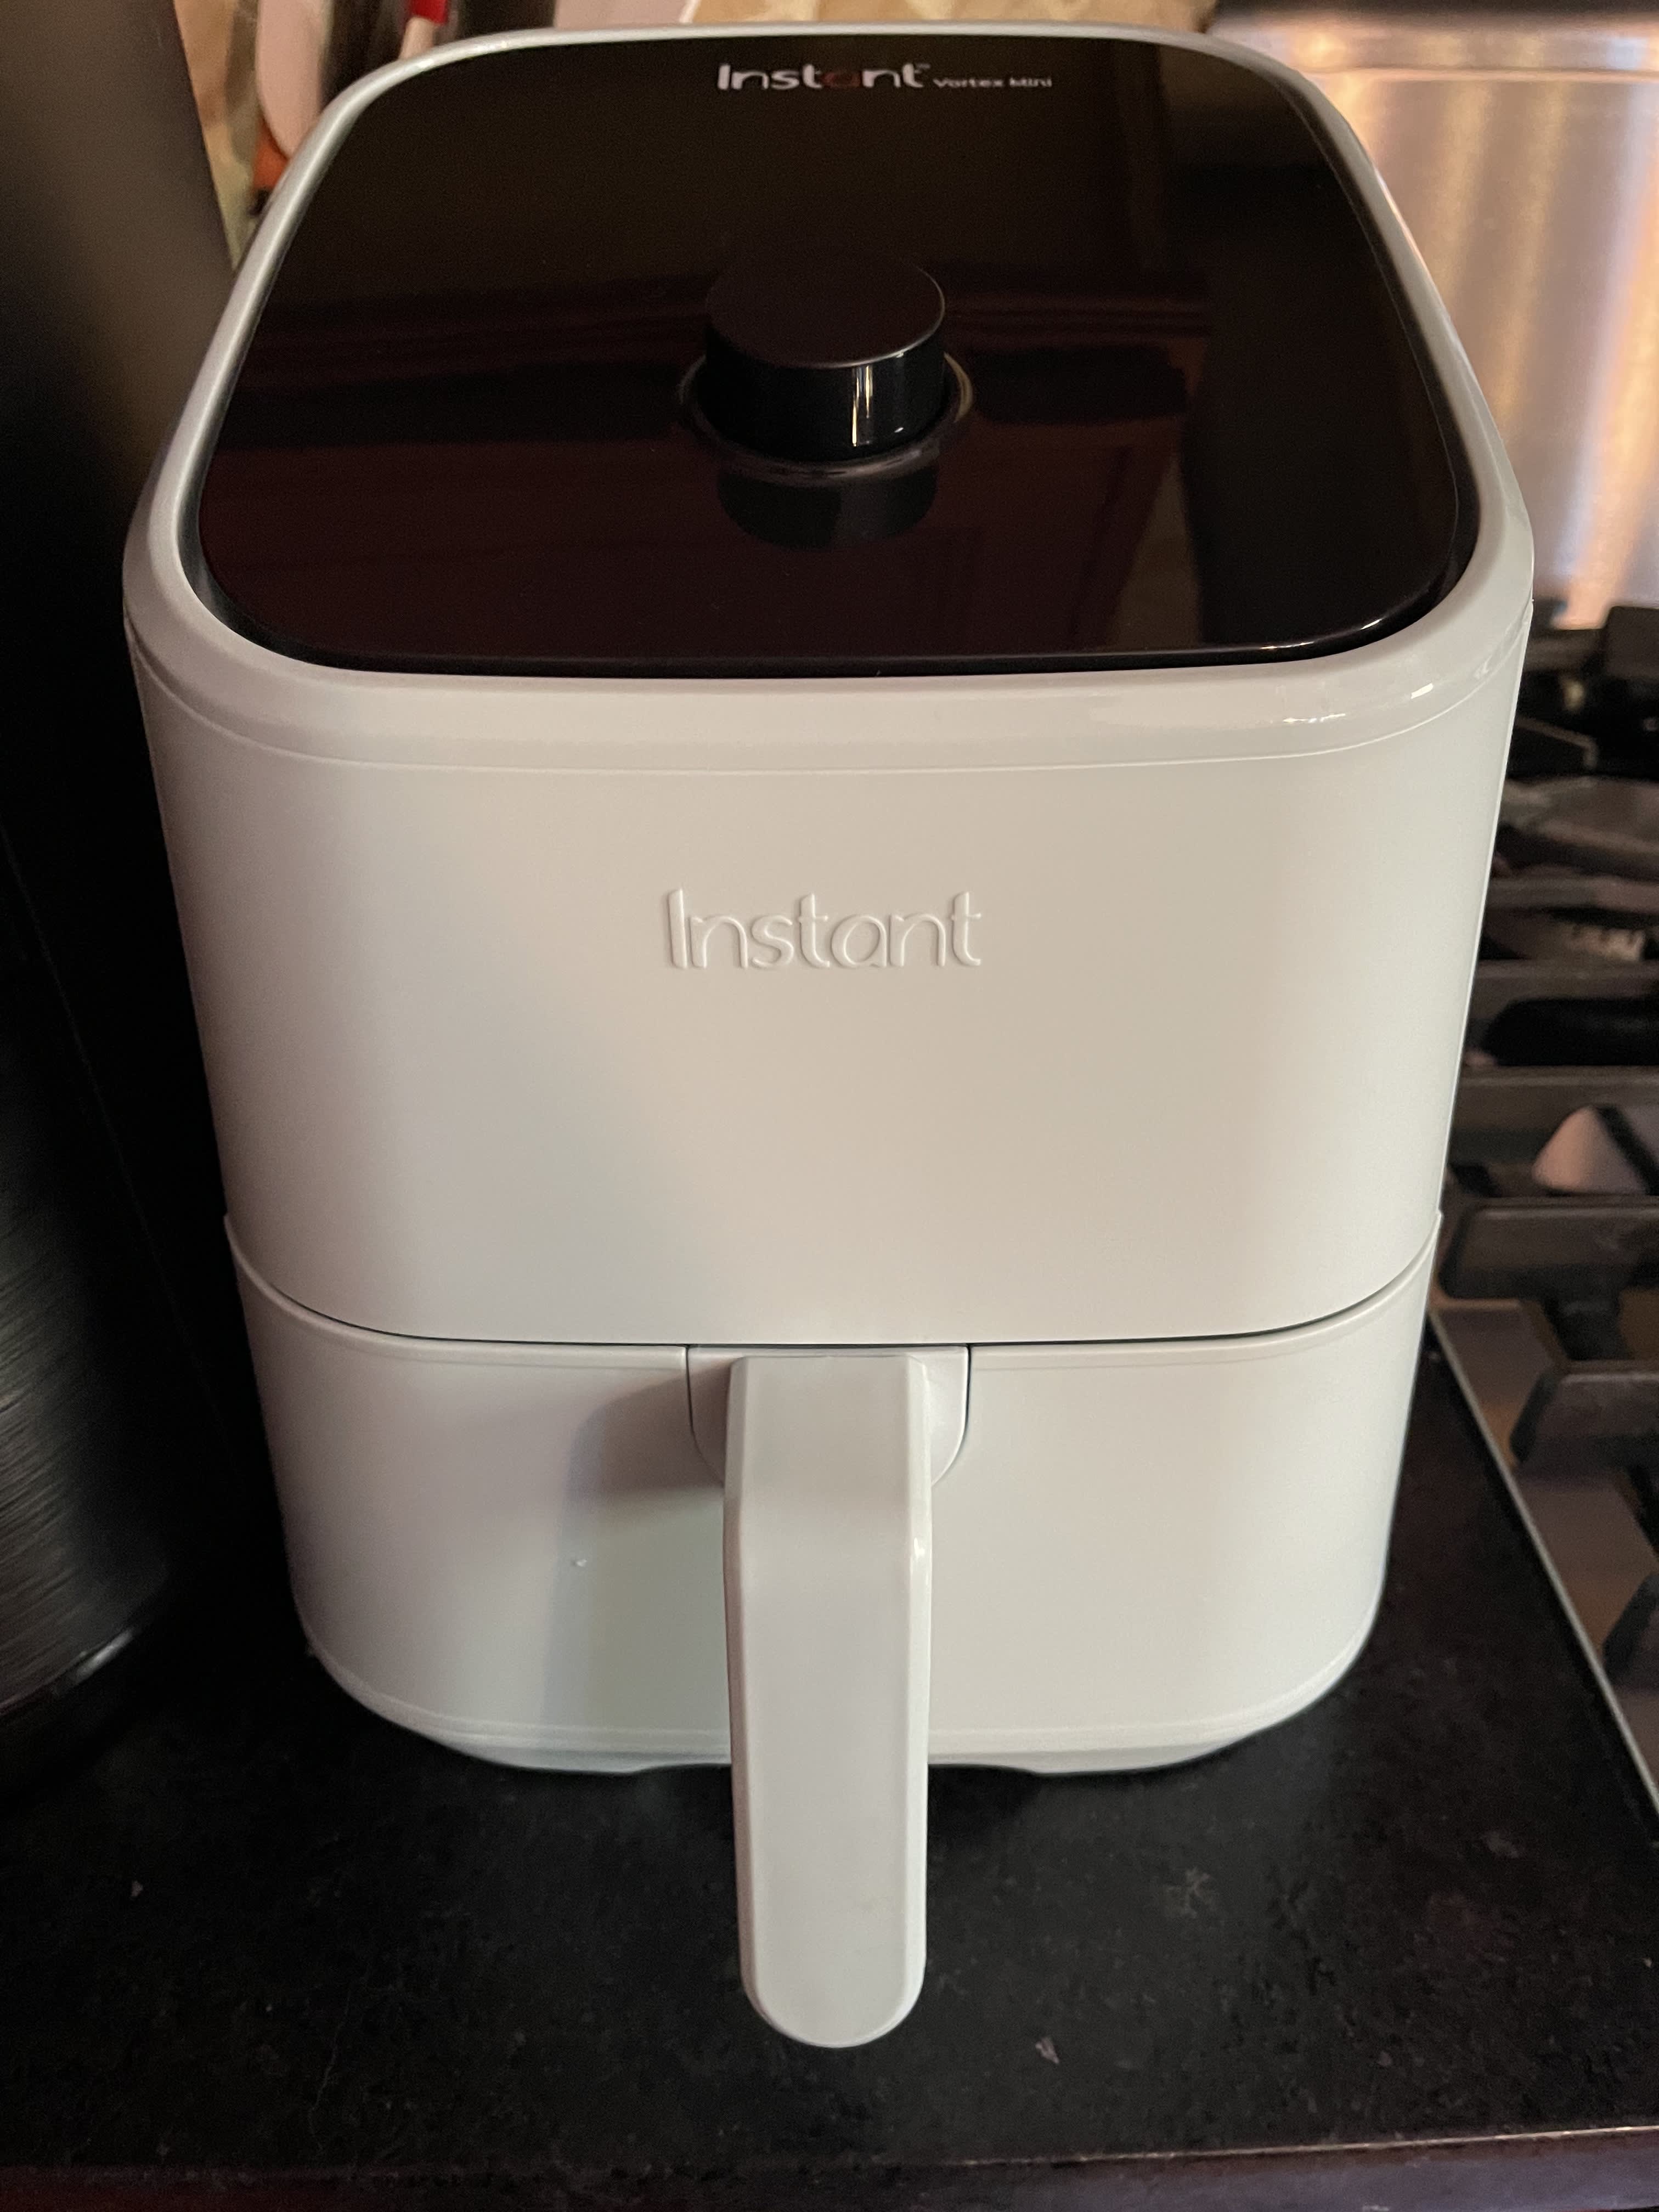 Instant Pot Air Fryer Lid Review 2022